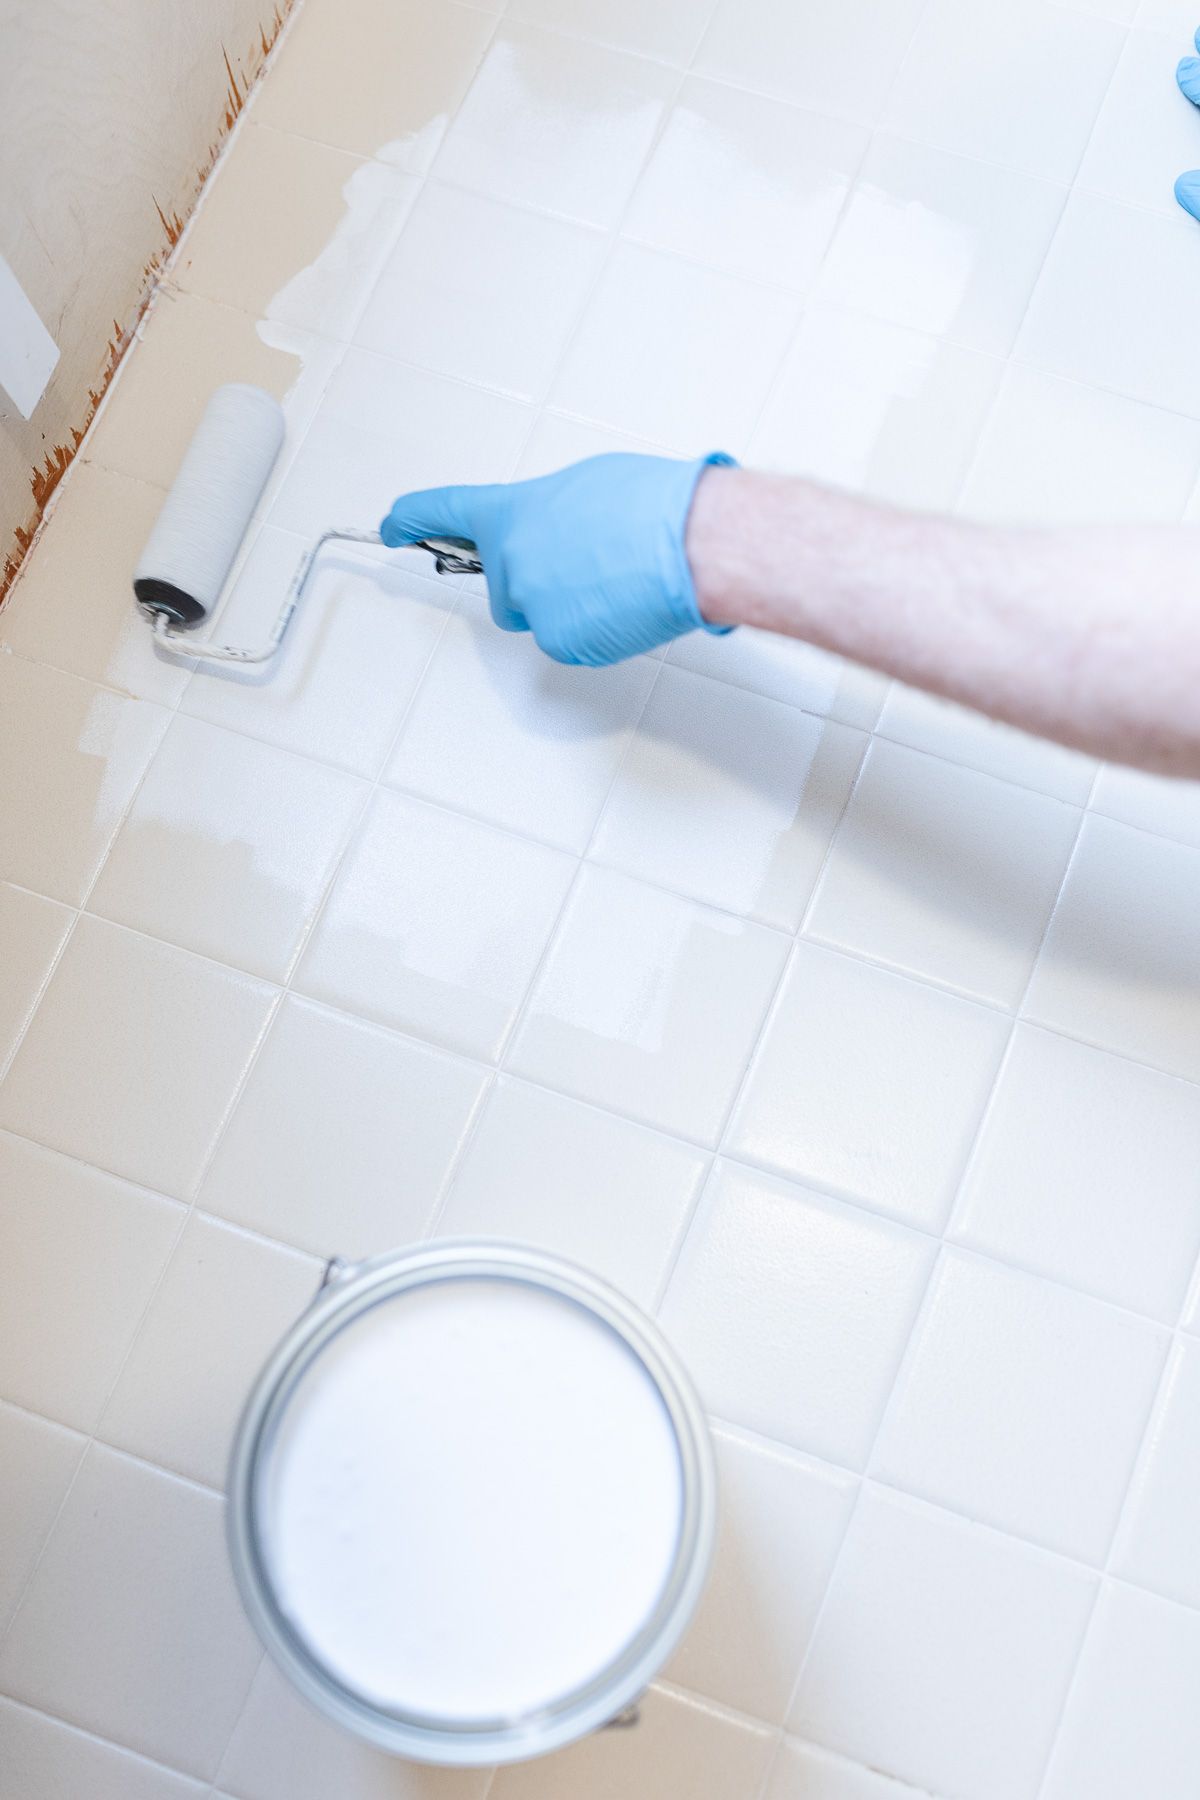 一个戴着乳胶手套的人在旧浴室瓷砖上滚动处理剂